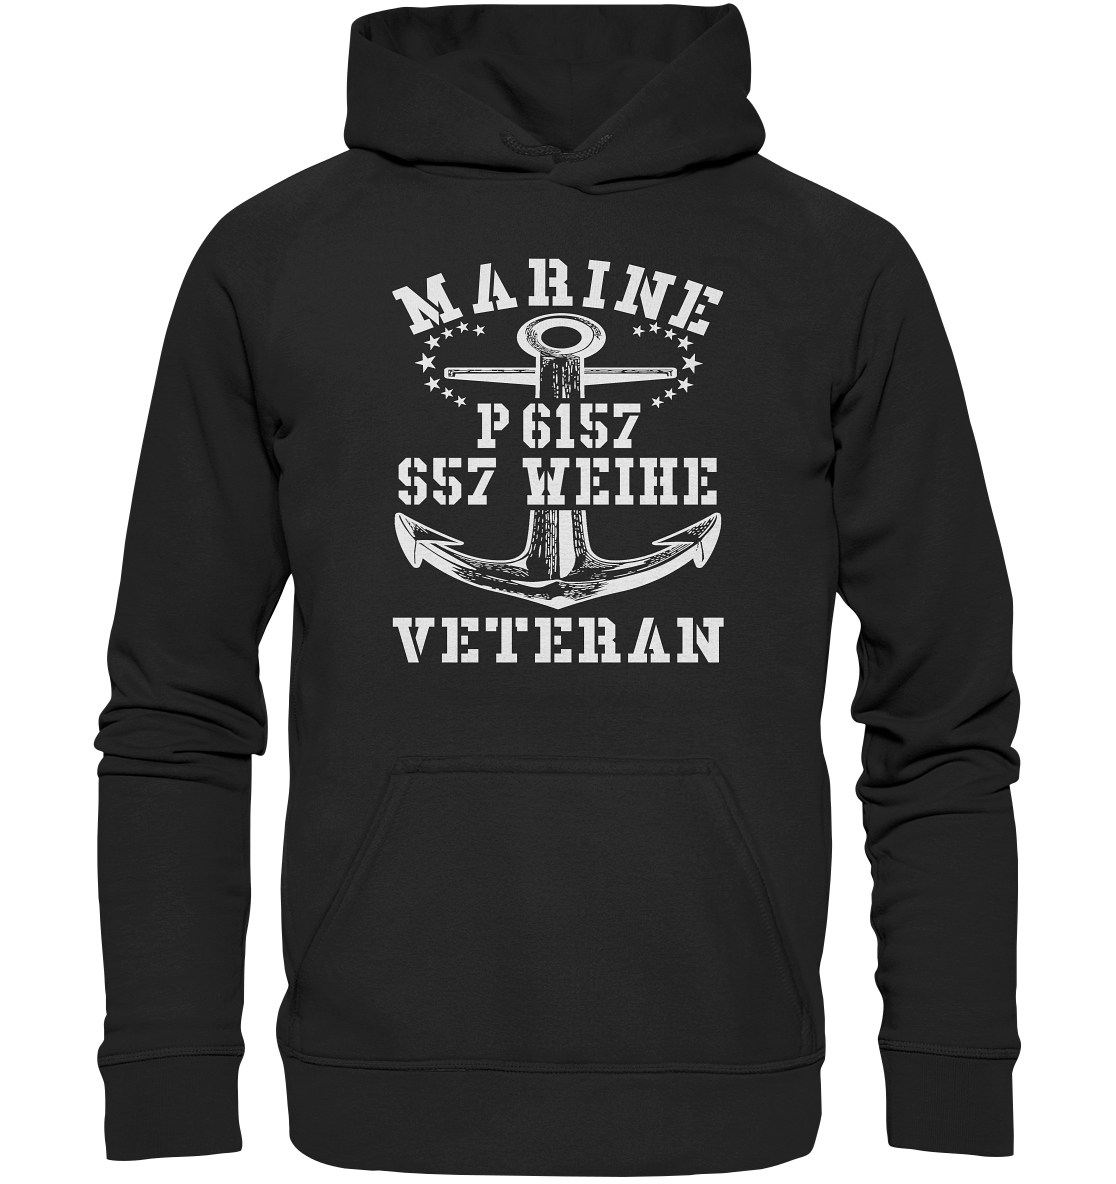 P6157 S57 WEIHE Marine Veteran - Basic Unisex Hoodie XL